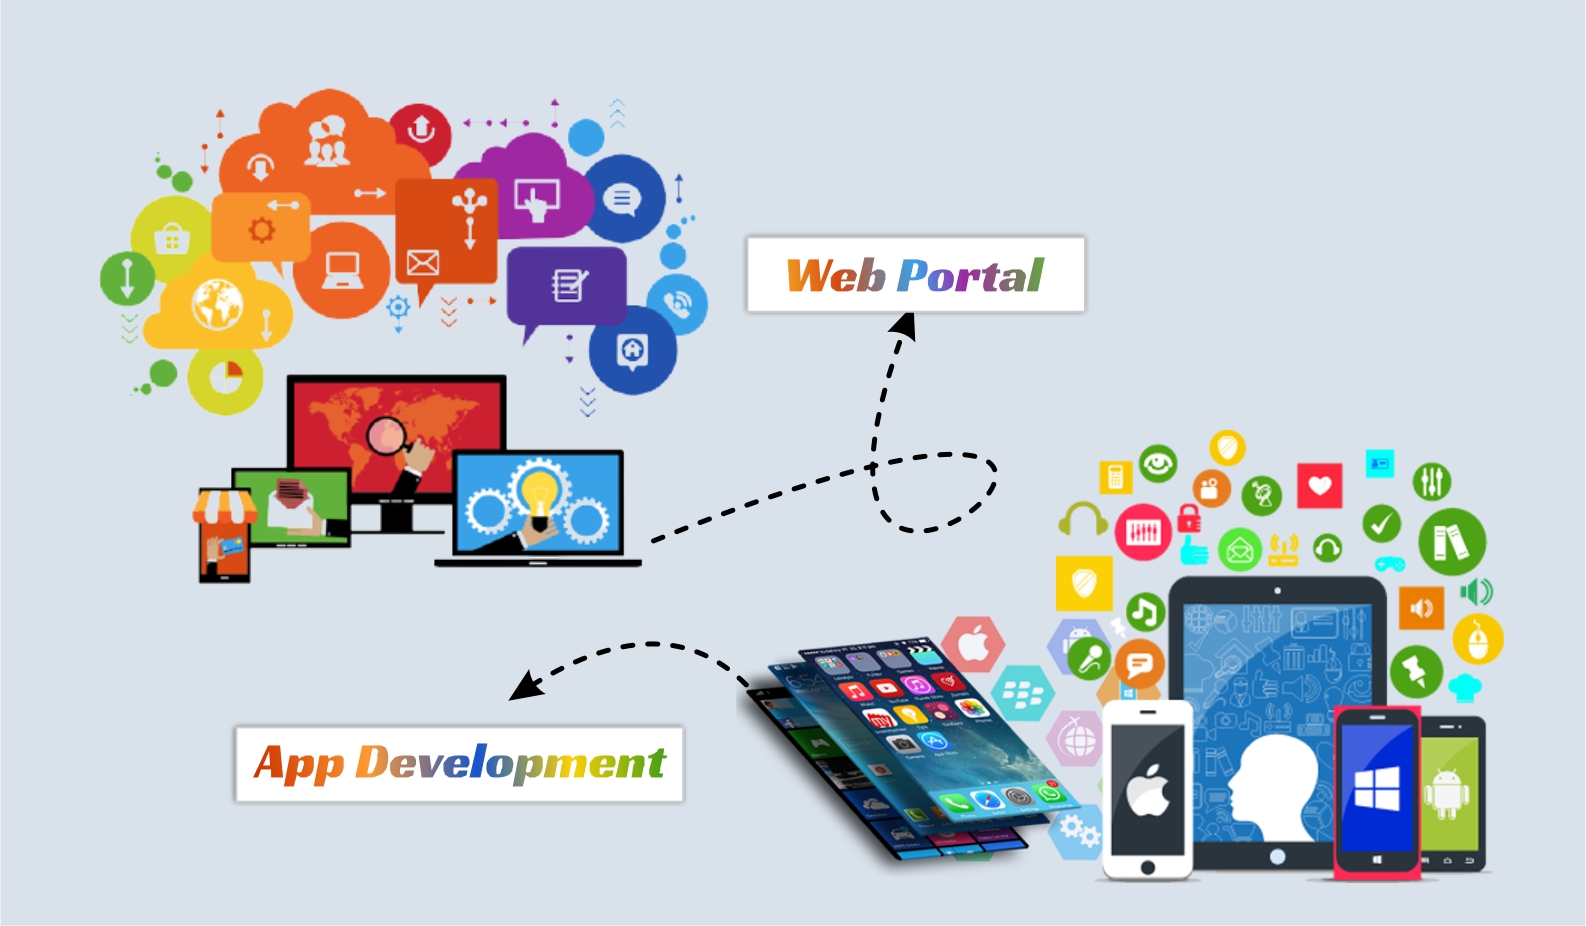 Mobile Web Portal